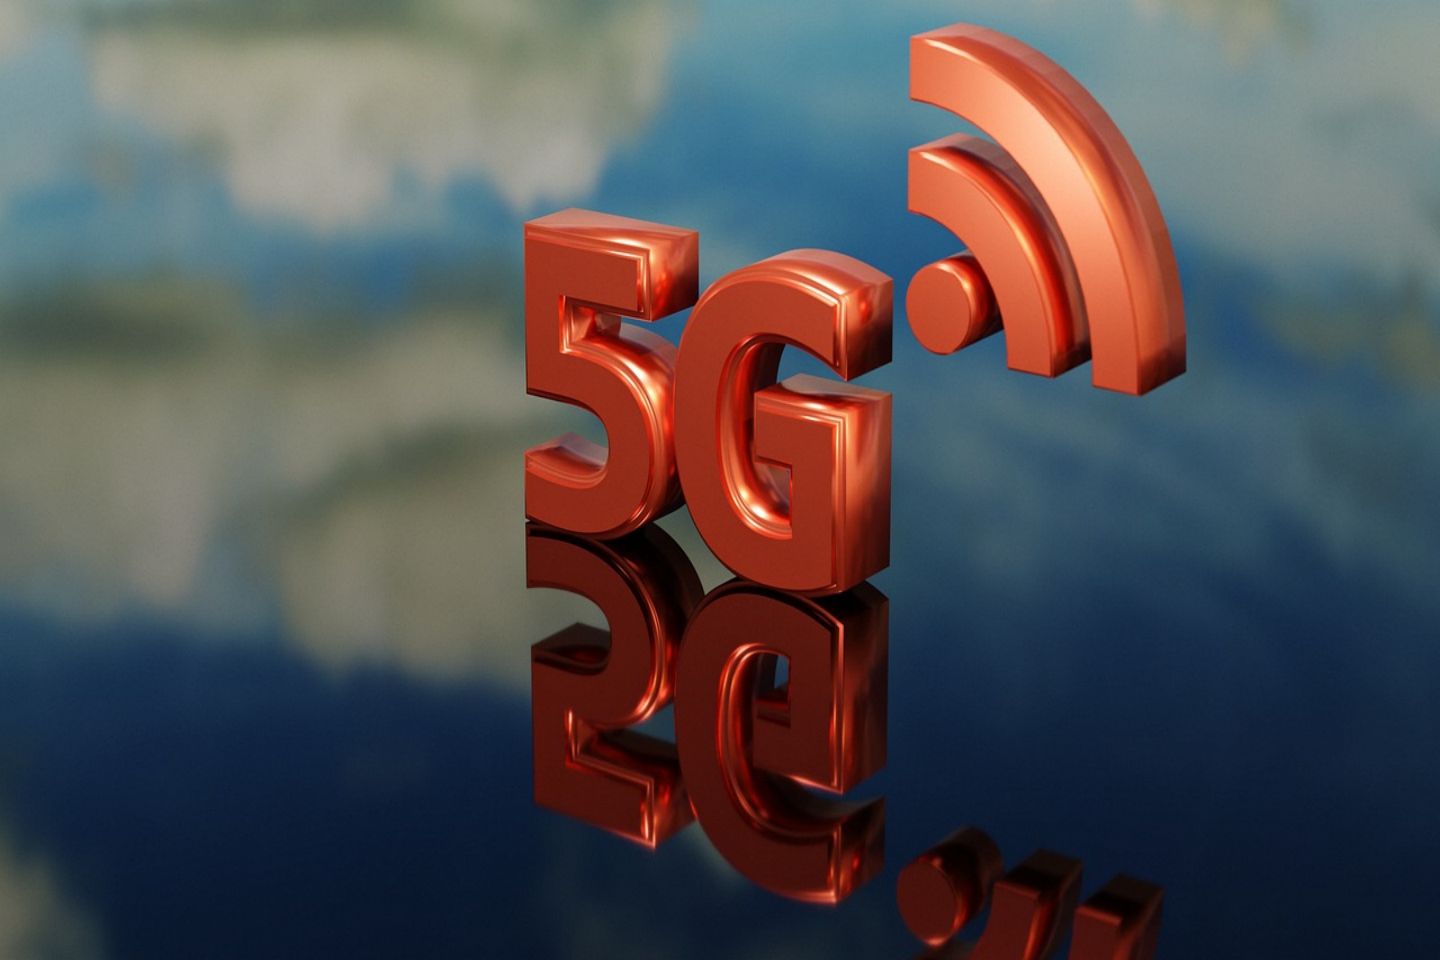 5G通信技术